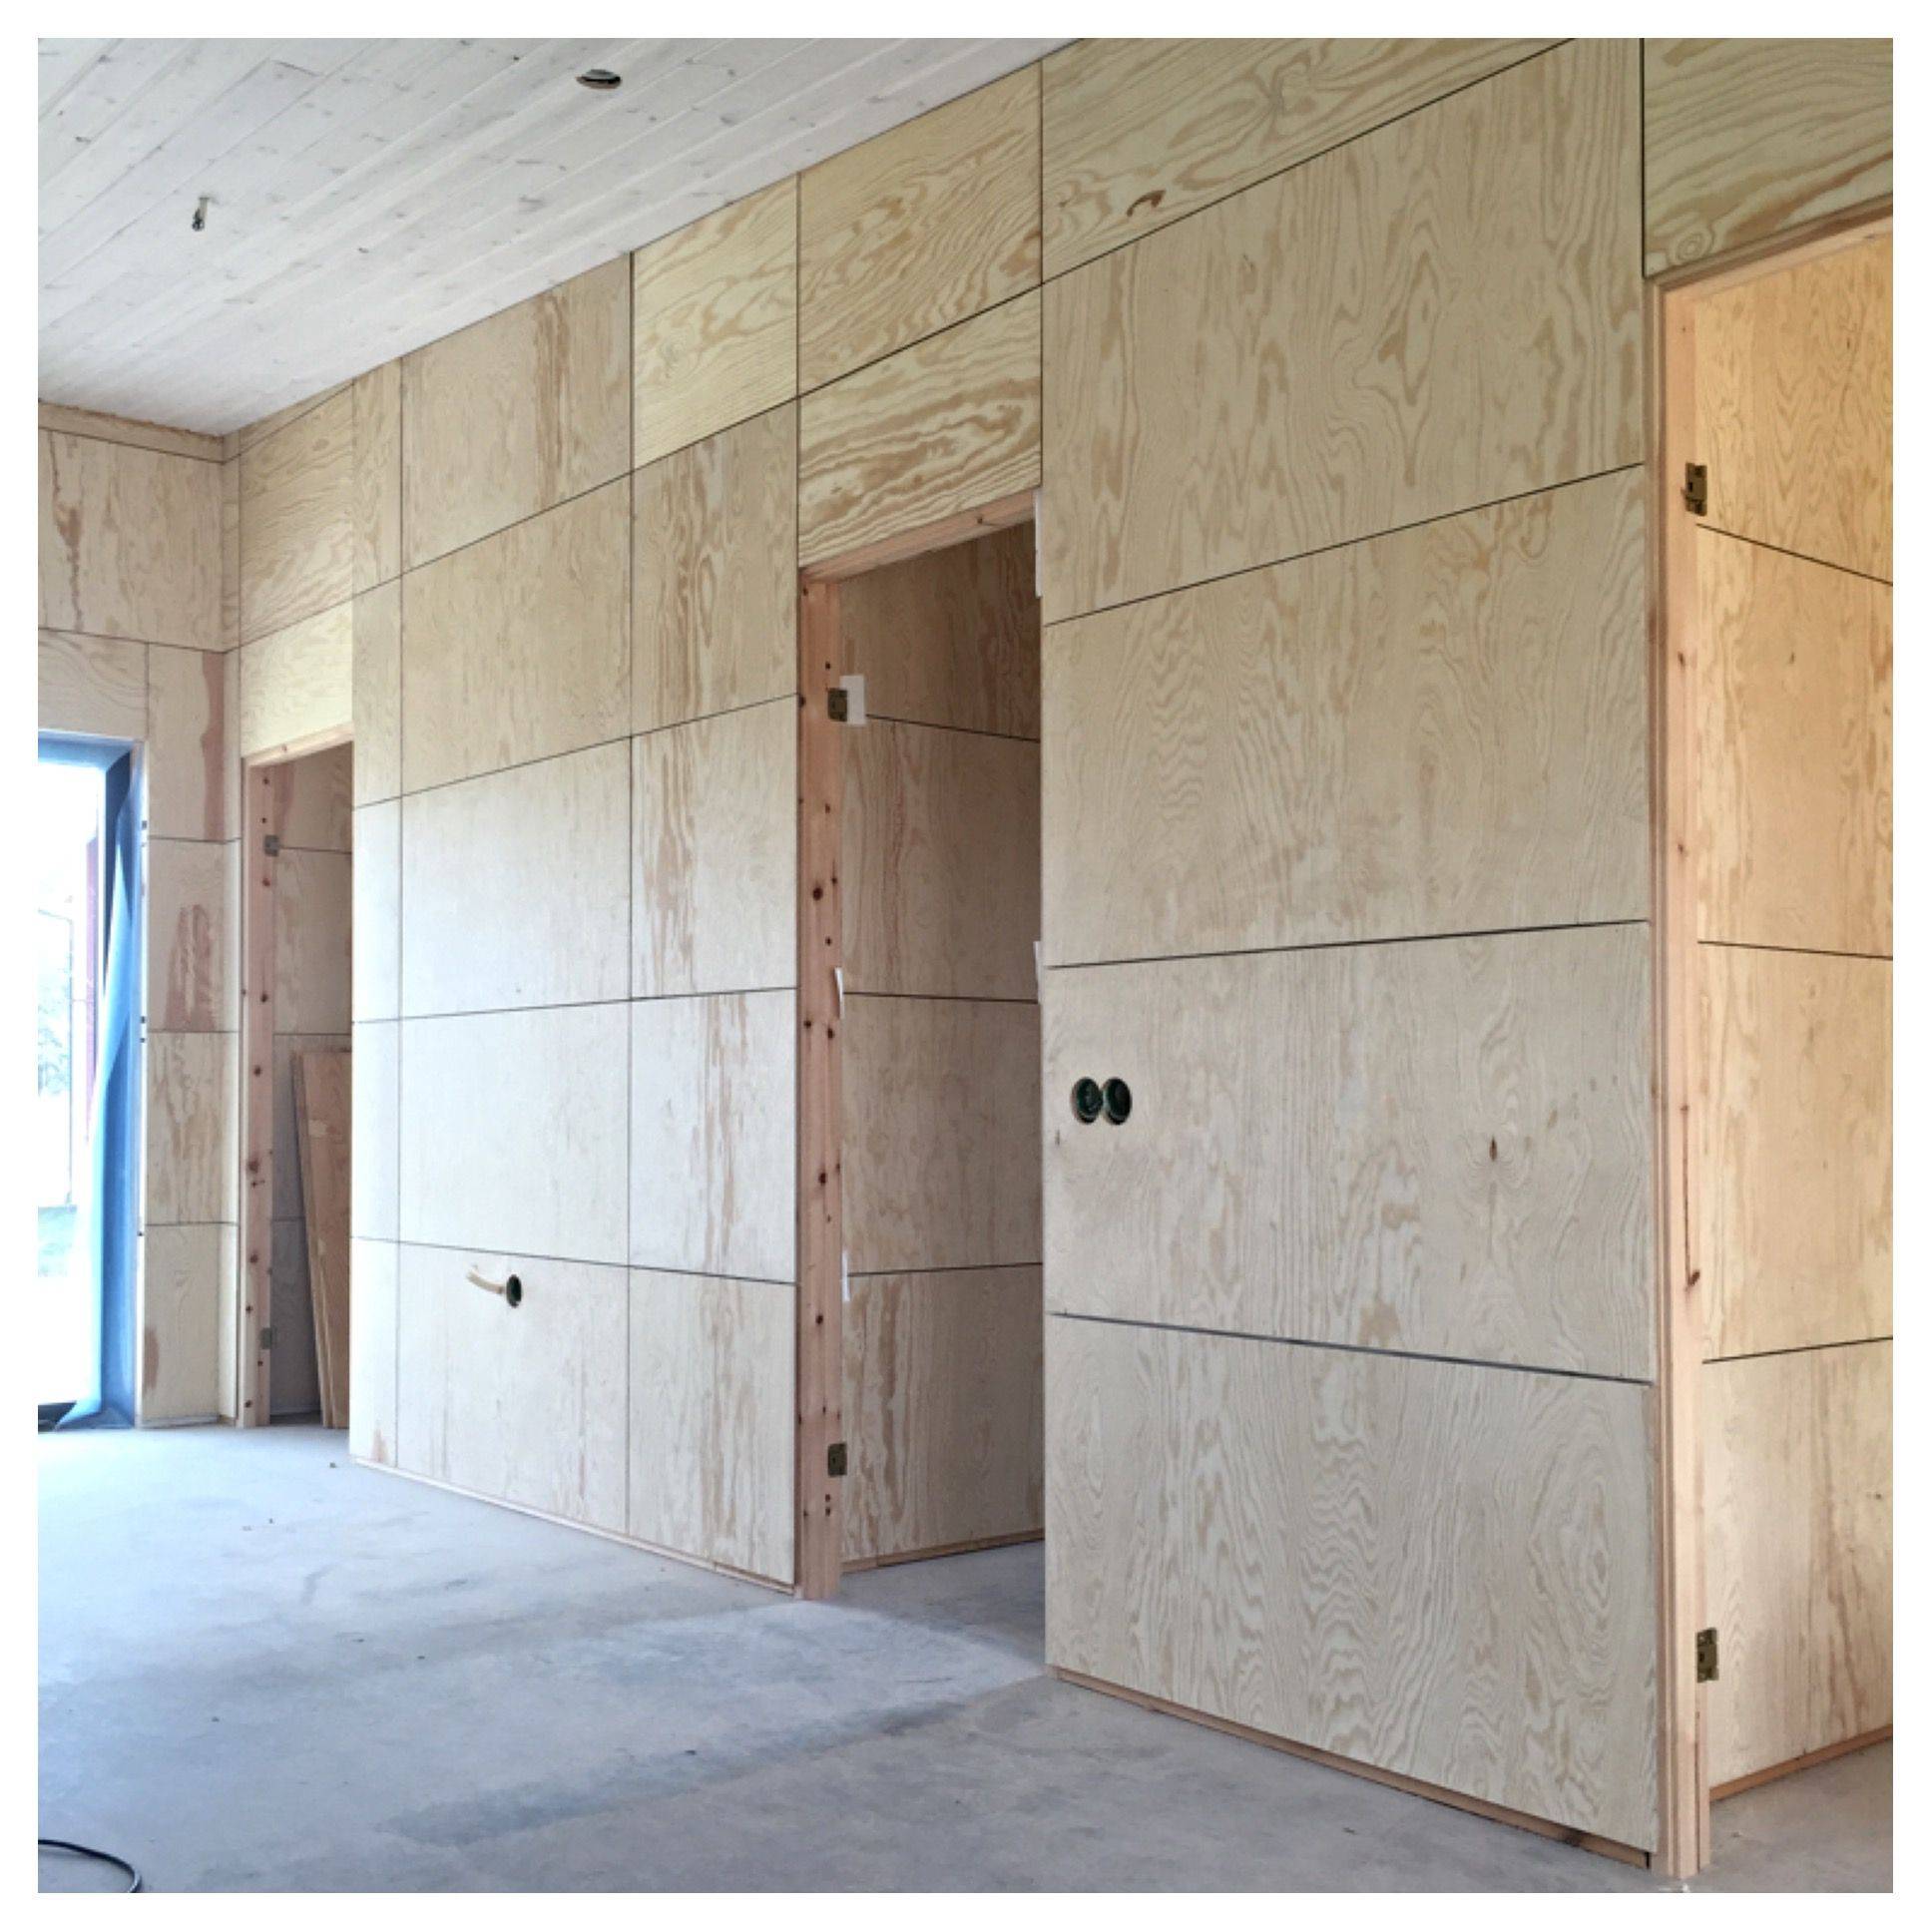 Обшивка стен фанерой – оптимальное решение, сочетающее отличный результат и доступную цену